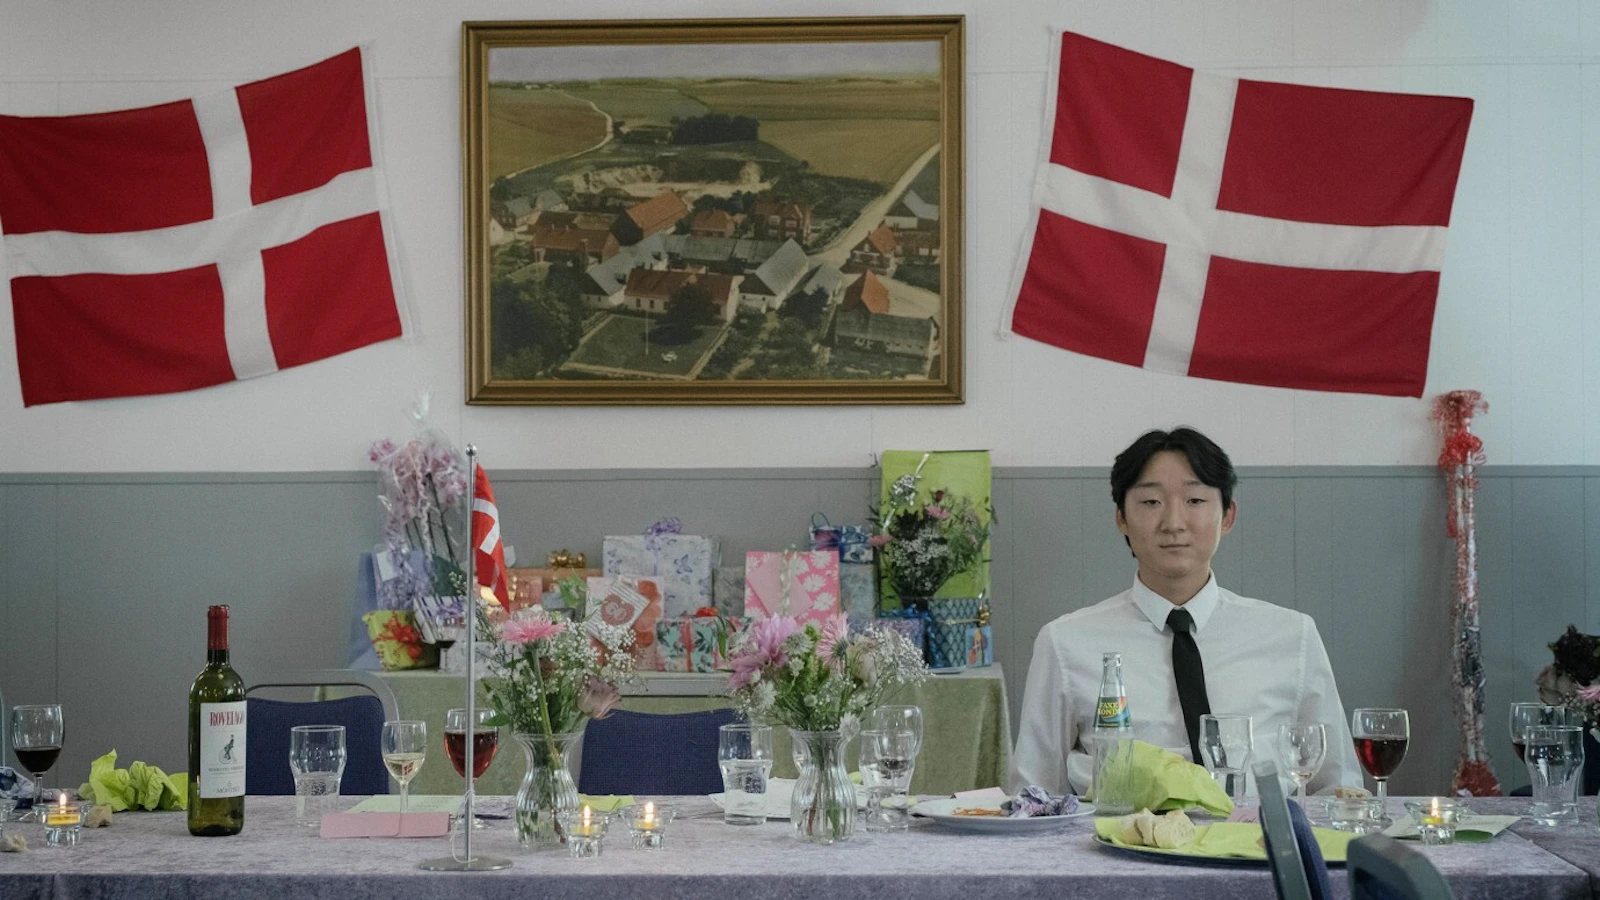 Stillbilde fra filmen Stille liv - mann med asiatisk utseende foran et dansk flagg